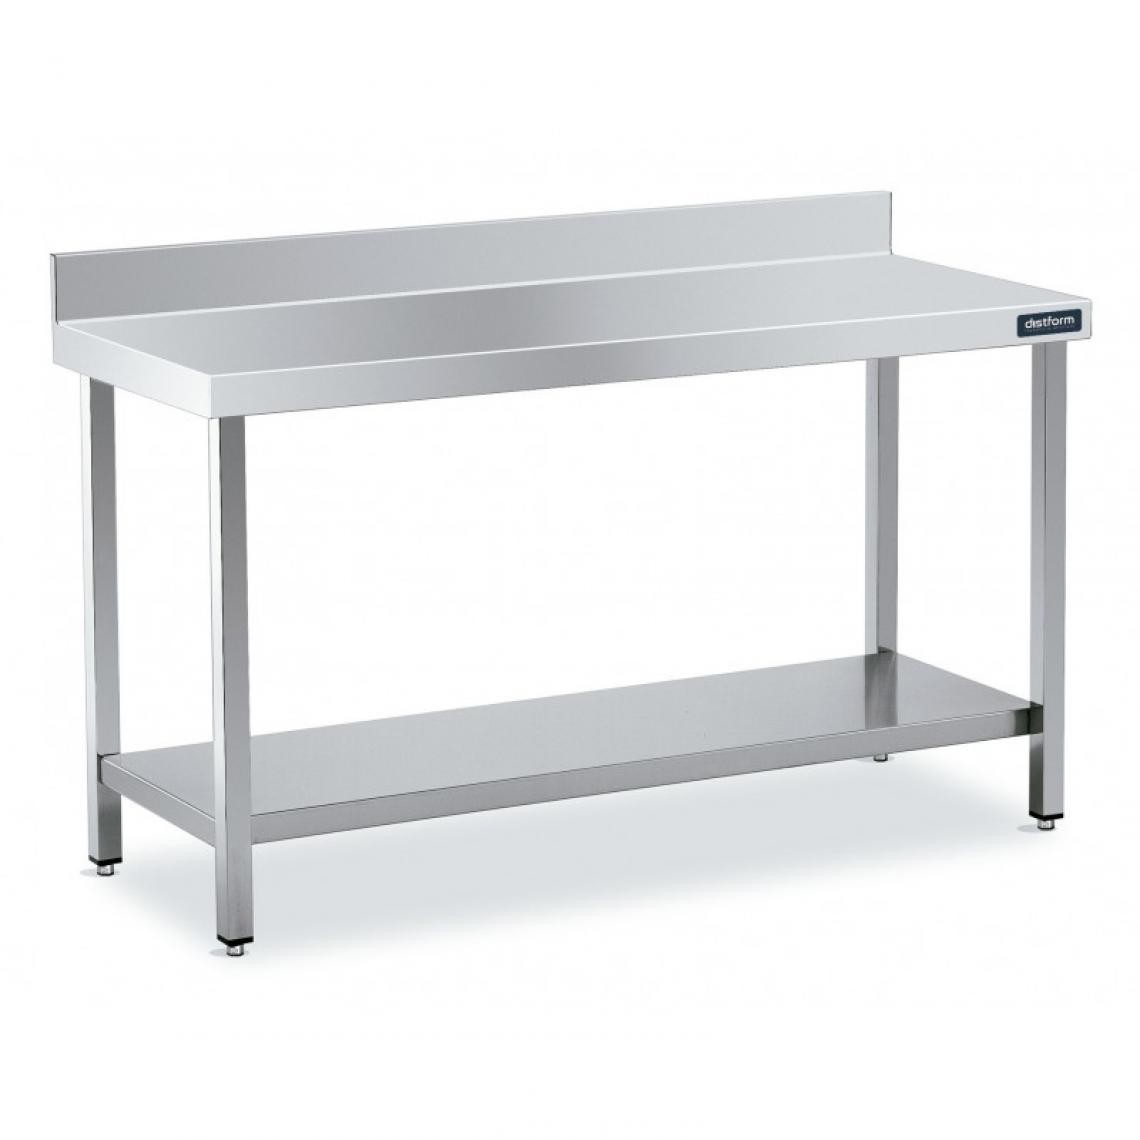 DISTFORM - Table Inox de Travail Adossée avec Étagère - Gamme 500 - Distform - Acier inoxydable1400x500 - Tables à manger